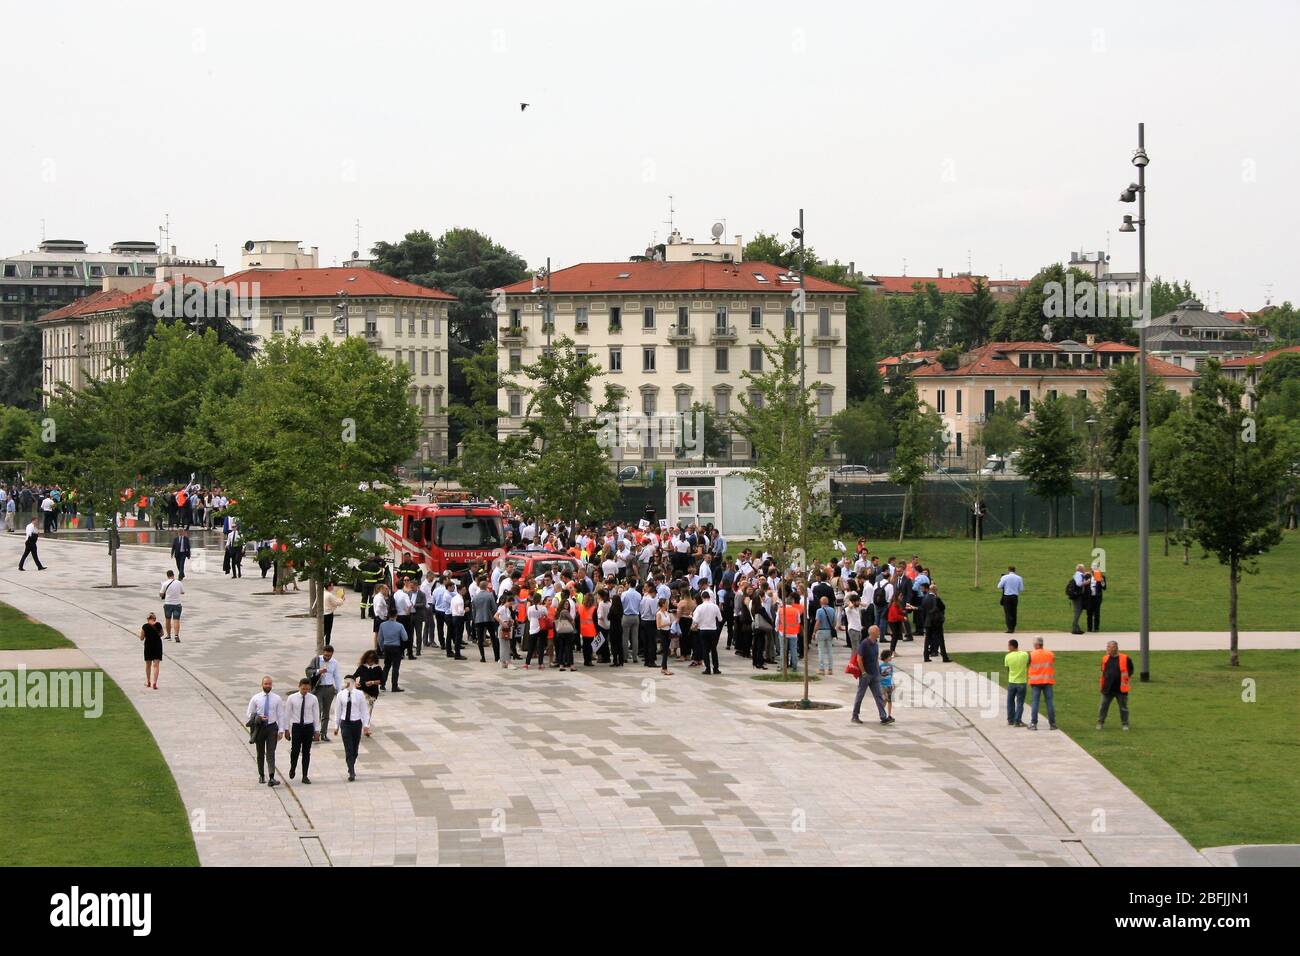 Milan - Italie - 11 juin 2019. Perceuse à incendie. Les gens se rassemblent lors d'un exercice d'évacuation dans le quartier de la vie de Milan. Banque D'Images